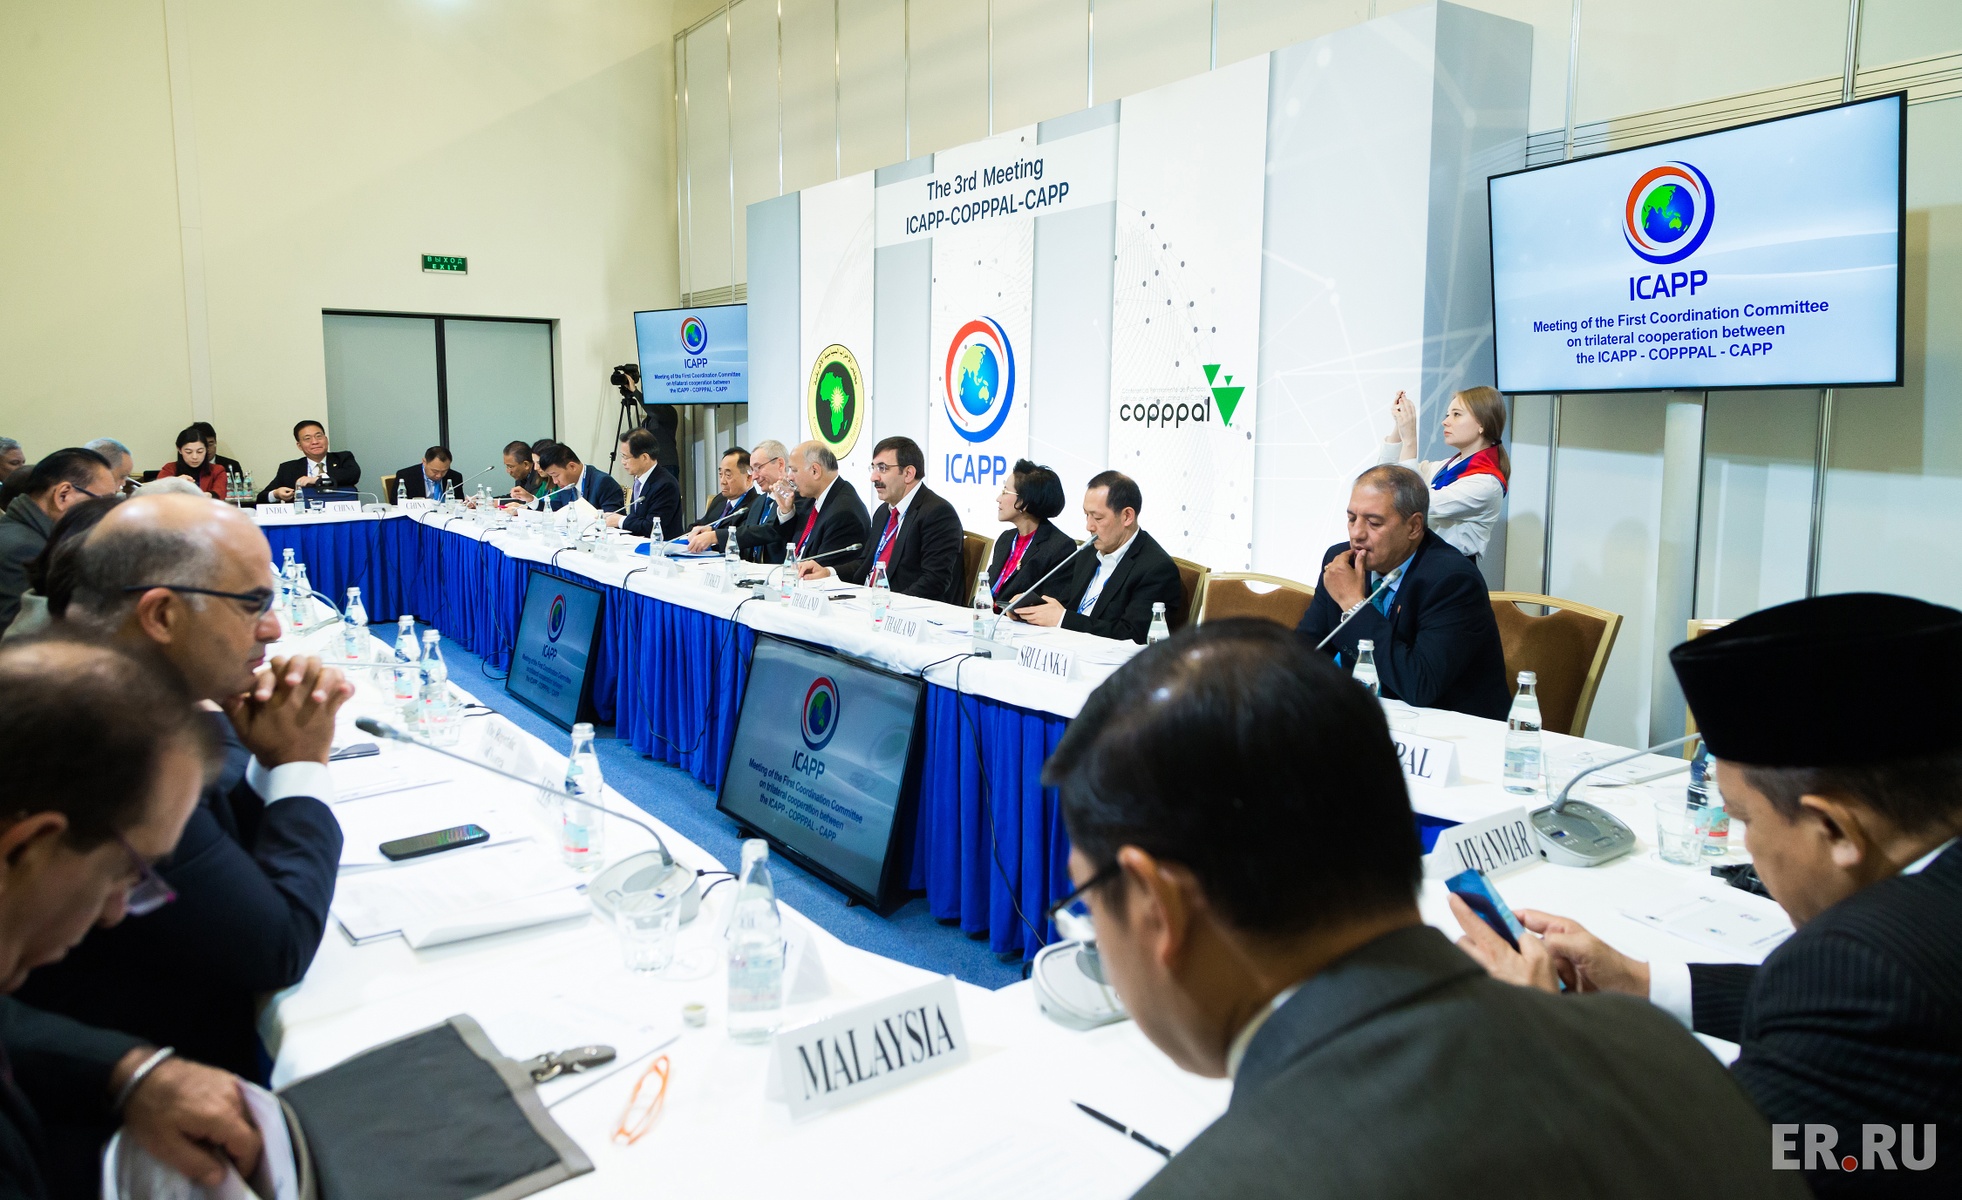 Заседание Координационного комитета по трехстороннему сотрудничеству между МКАПП, COPPPAL и СAPP